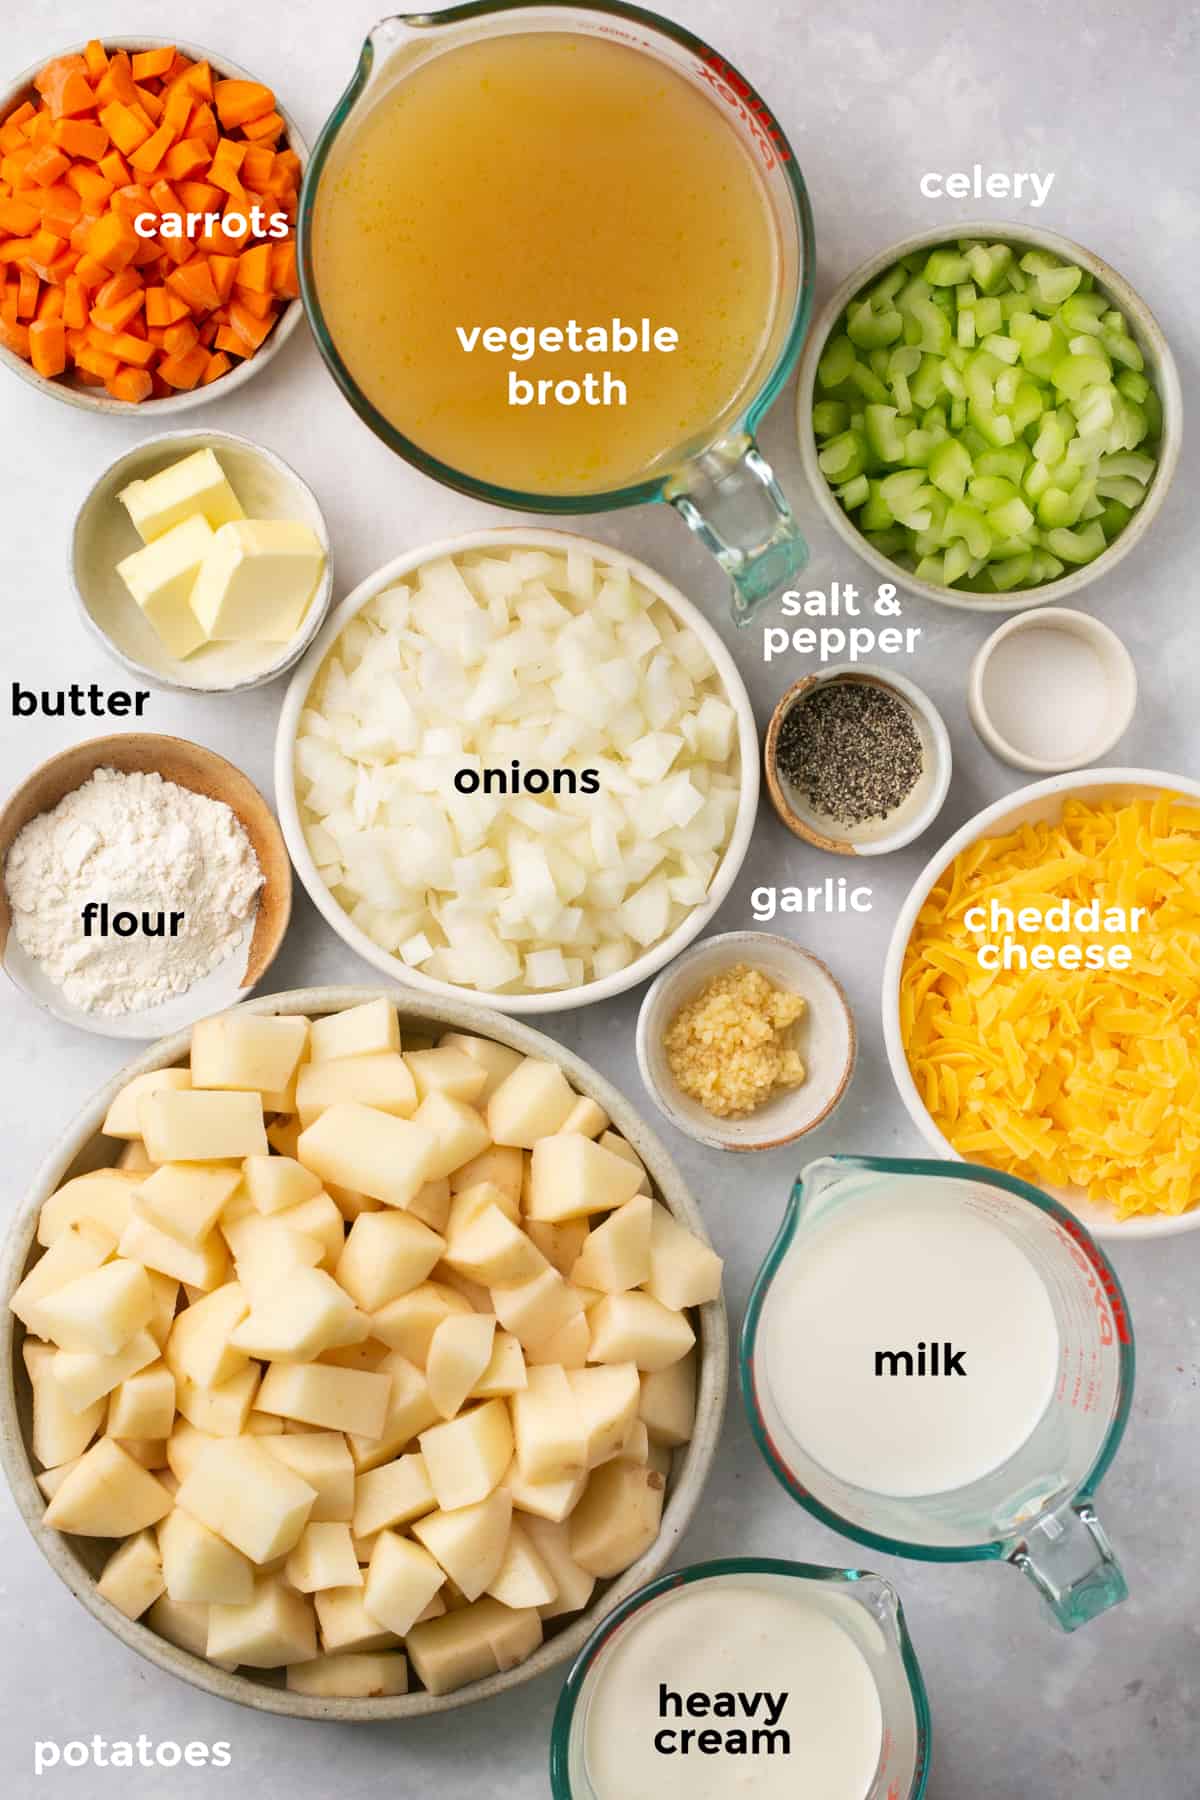 Best Potato Soup Recipe - How To Make Potato Soup